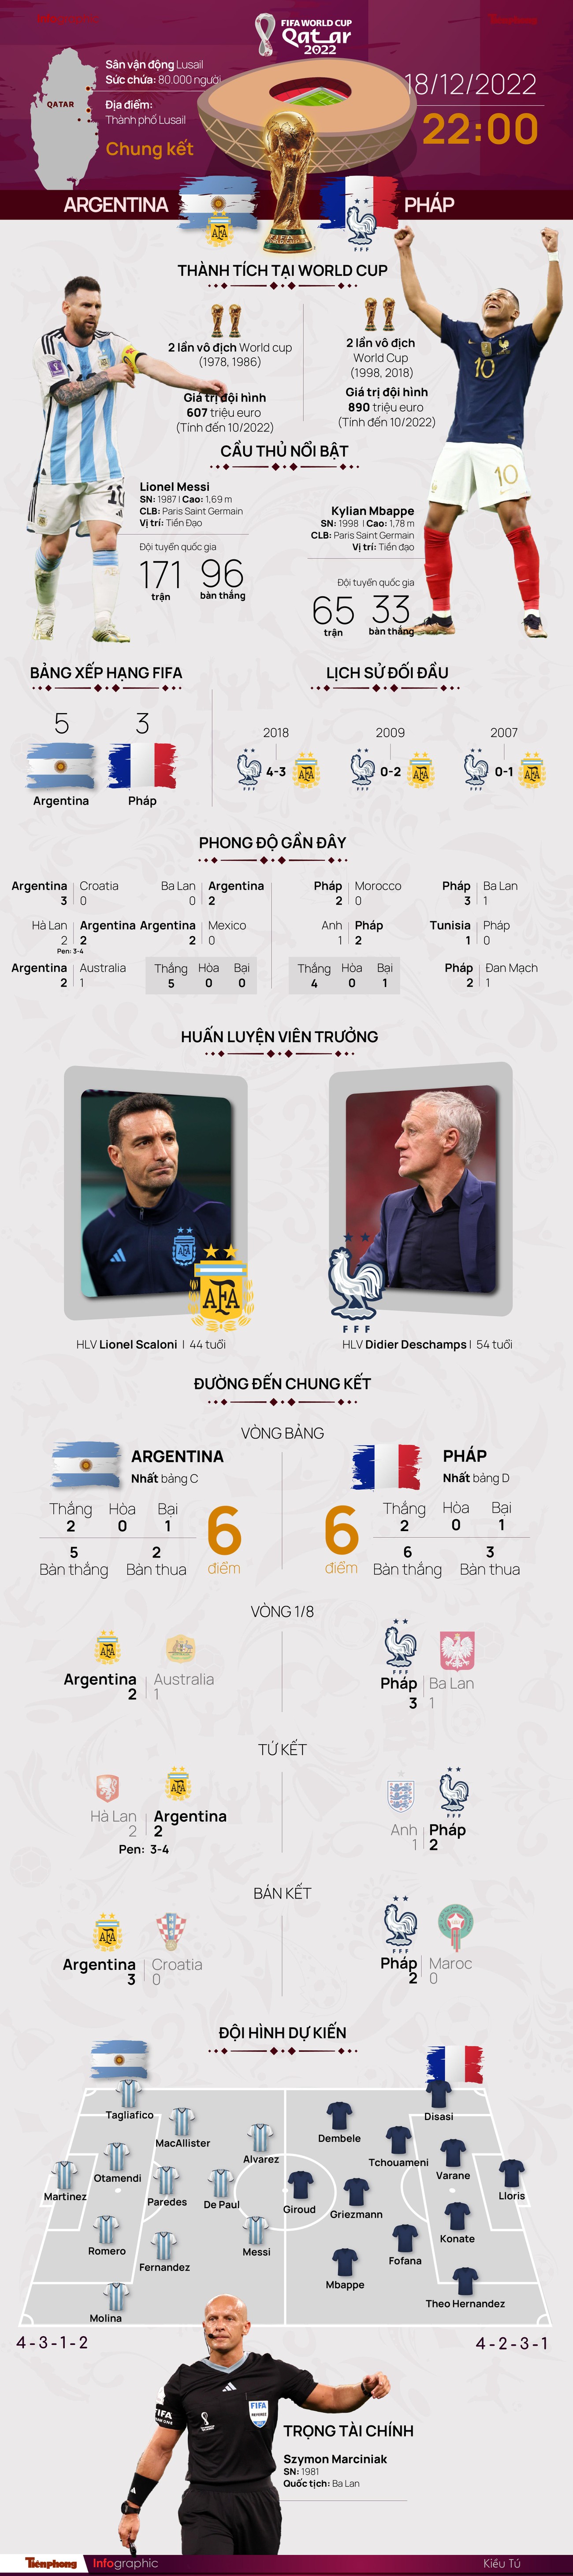 Chung kết World Cup 2022: Tương quan trước trận Argentina - Pháp, 22 giờ 18/12 ảnh 1